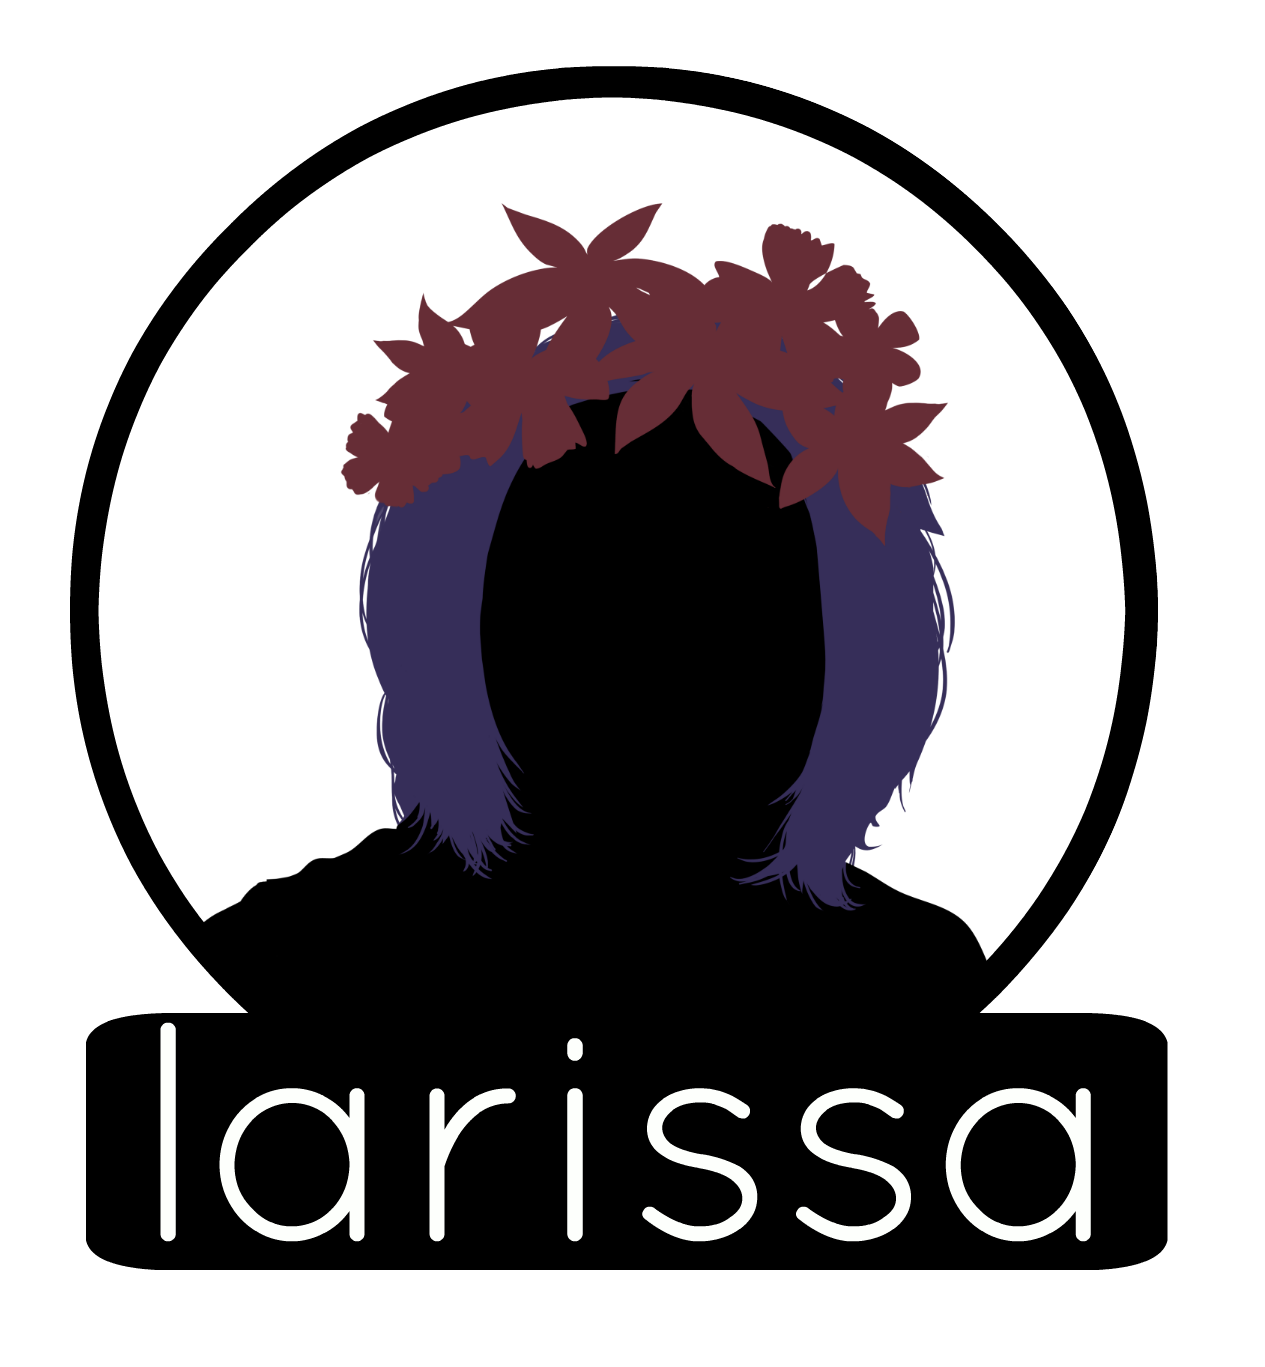 Larissa Circle BG Label